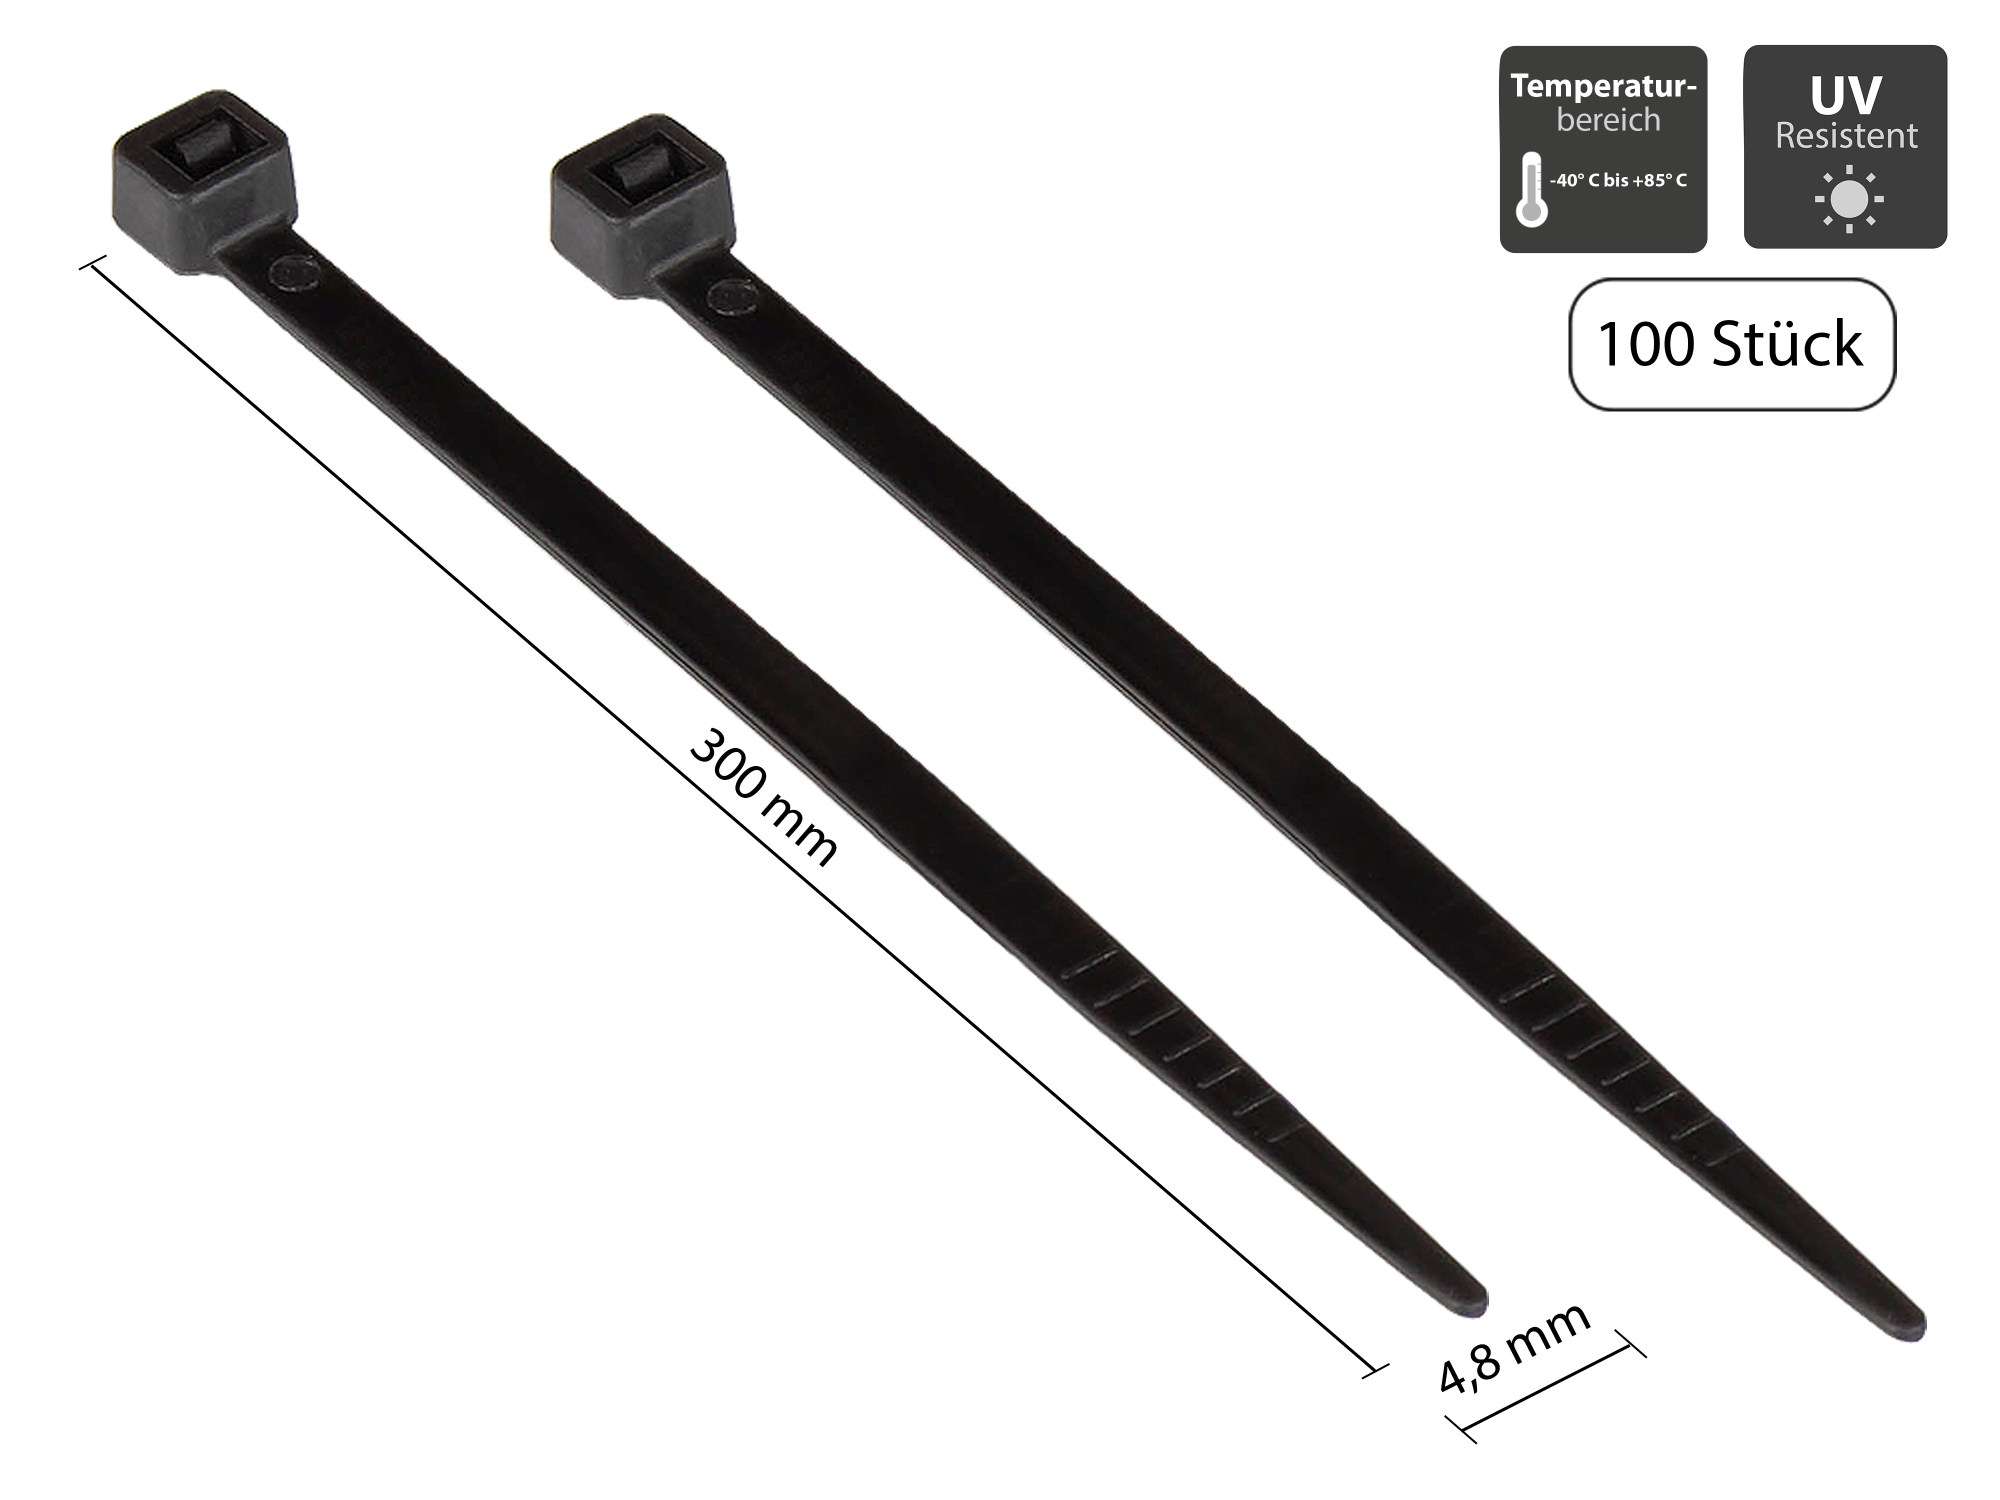 Kabelbinder 300 mm x 4,8 mm, schwarz, UL, UV-resistent, -40 °C bis +85 °C, 100 Stück